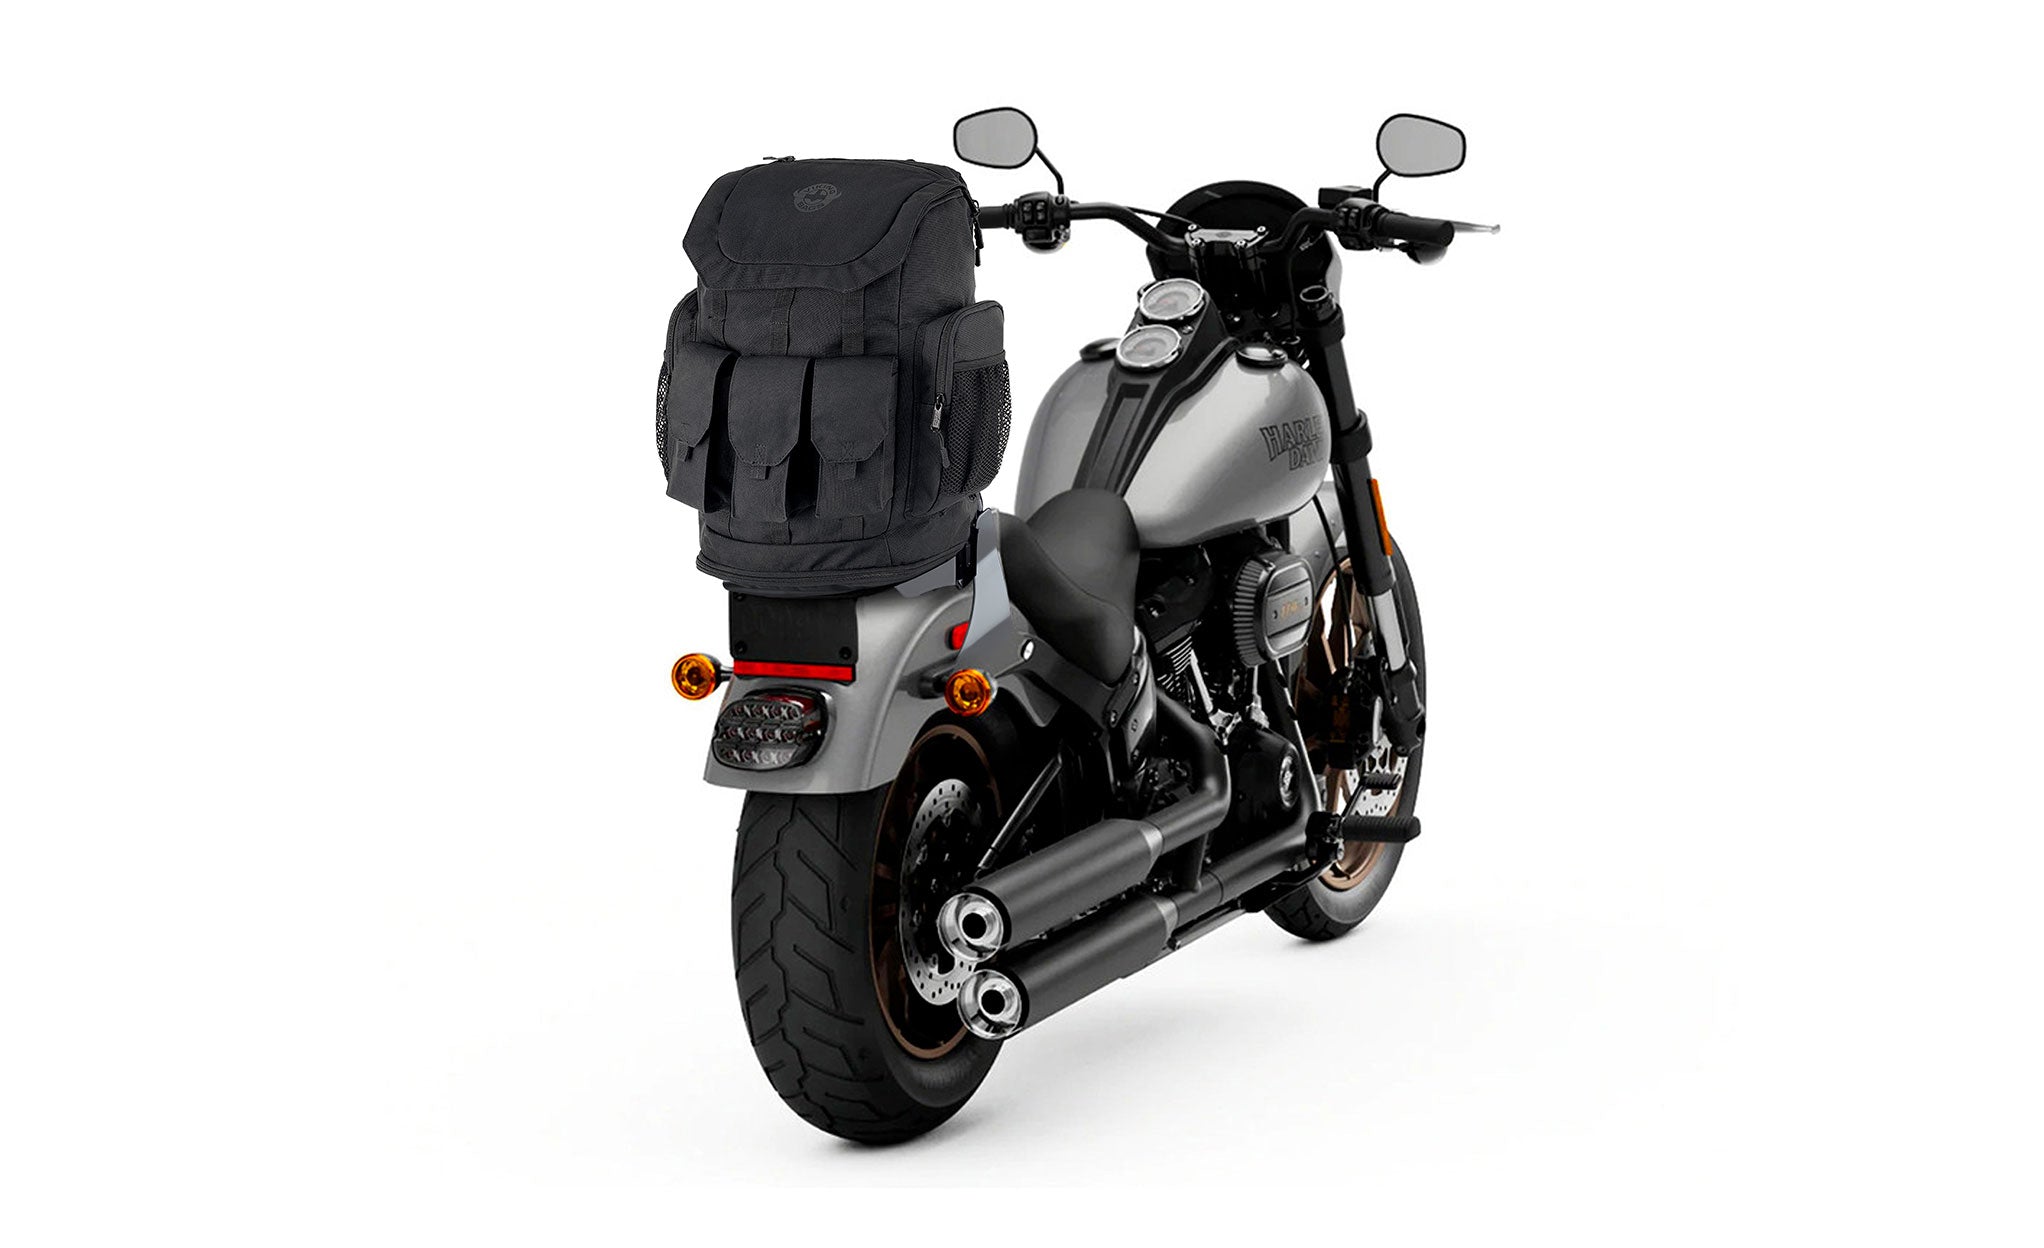 Viking Trident XL Yamaha Motorcycle Tail Bag Bag on Bike View @expand